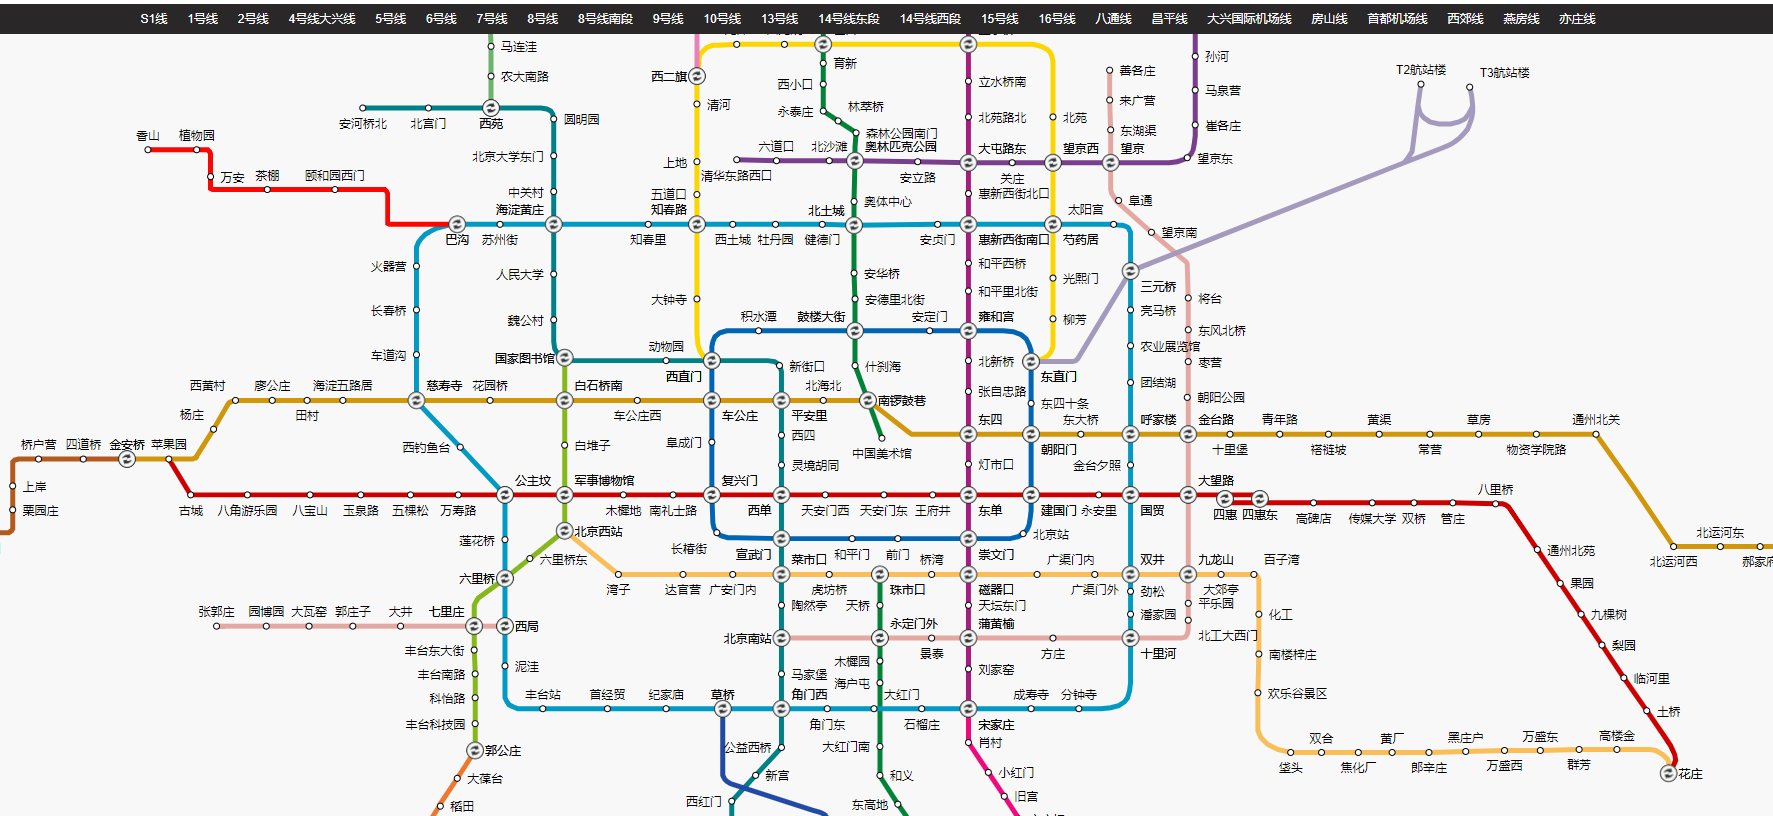 Python如何爬取高德地图地铁线路及站点数据